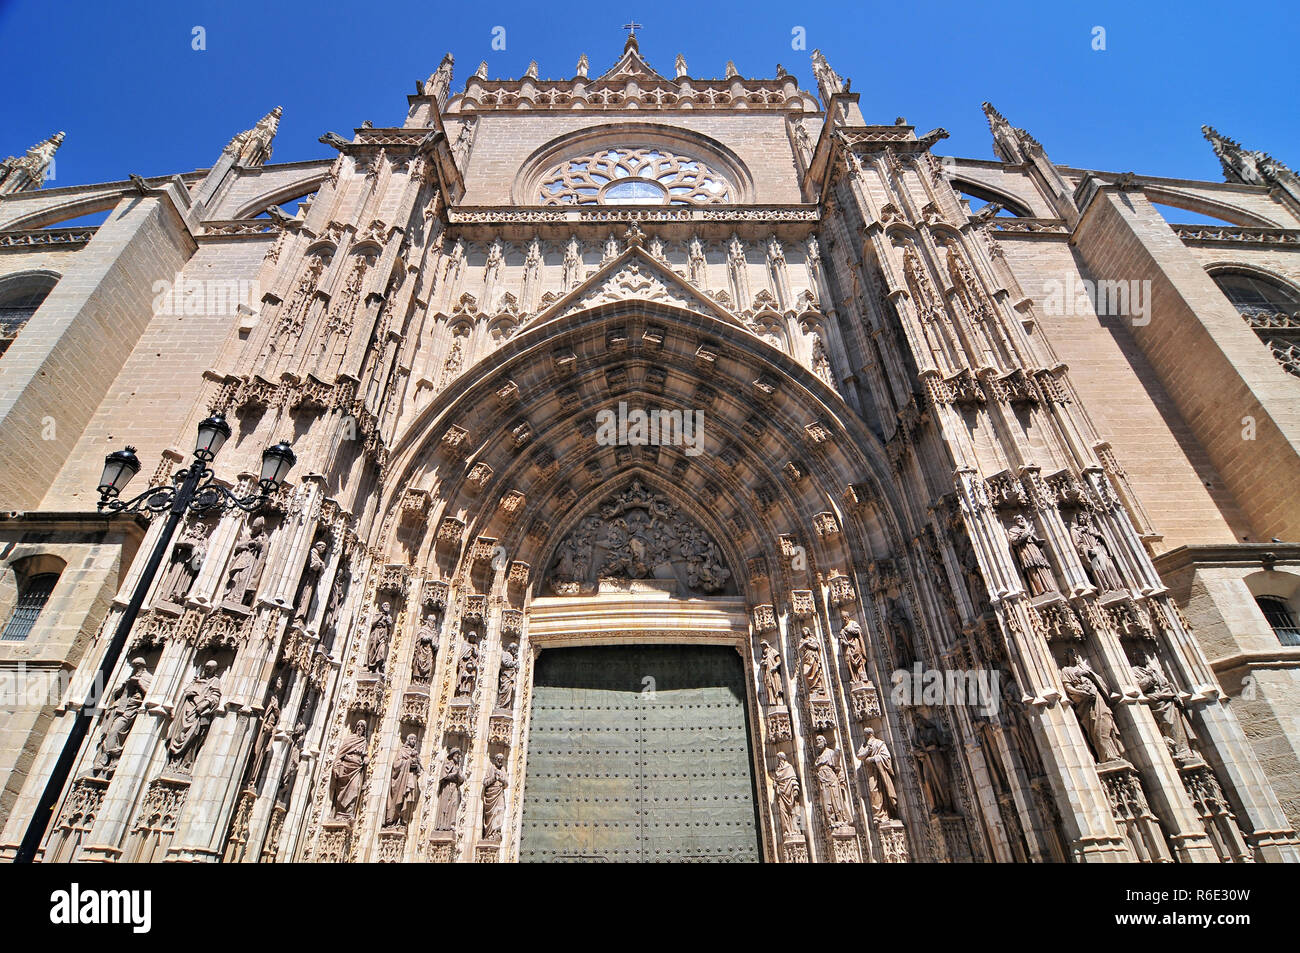 Porte de l'Assomption (Espagnol : Puerta De La Asuncion) de la Cathédrale de Séville en Espagne, principal portail de la façade ouest Banque D'Images